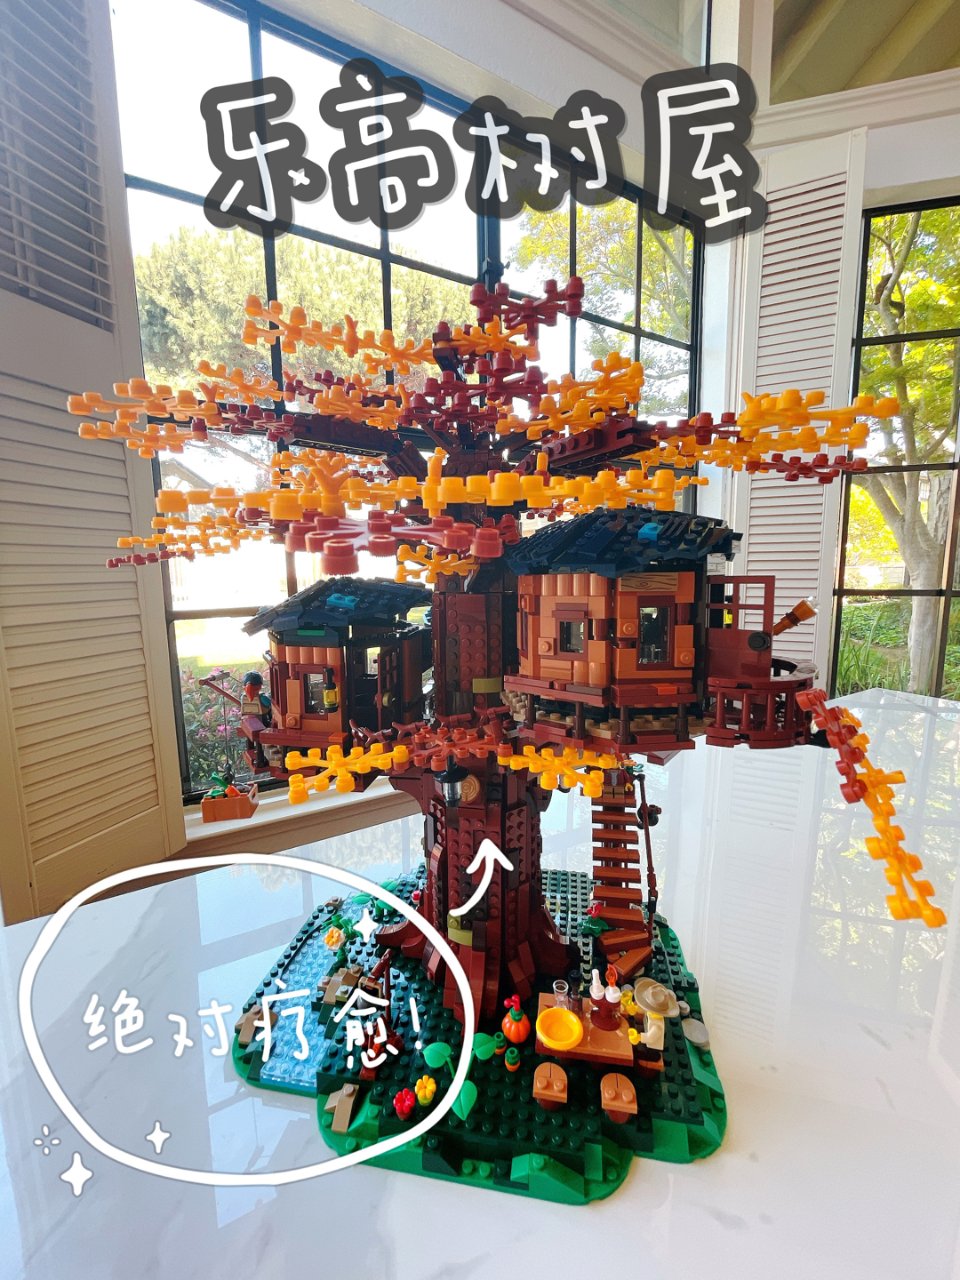 Lego 乐高,树屋 21318 | Ideas系列